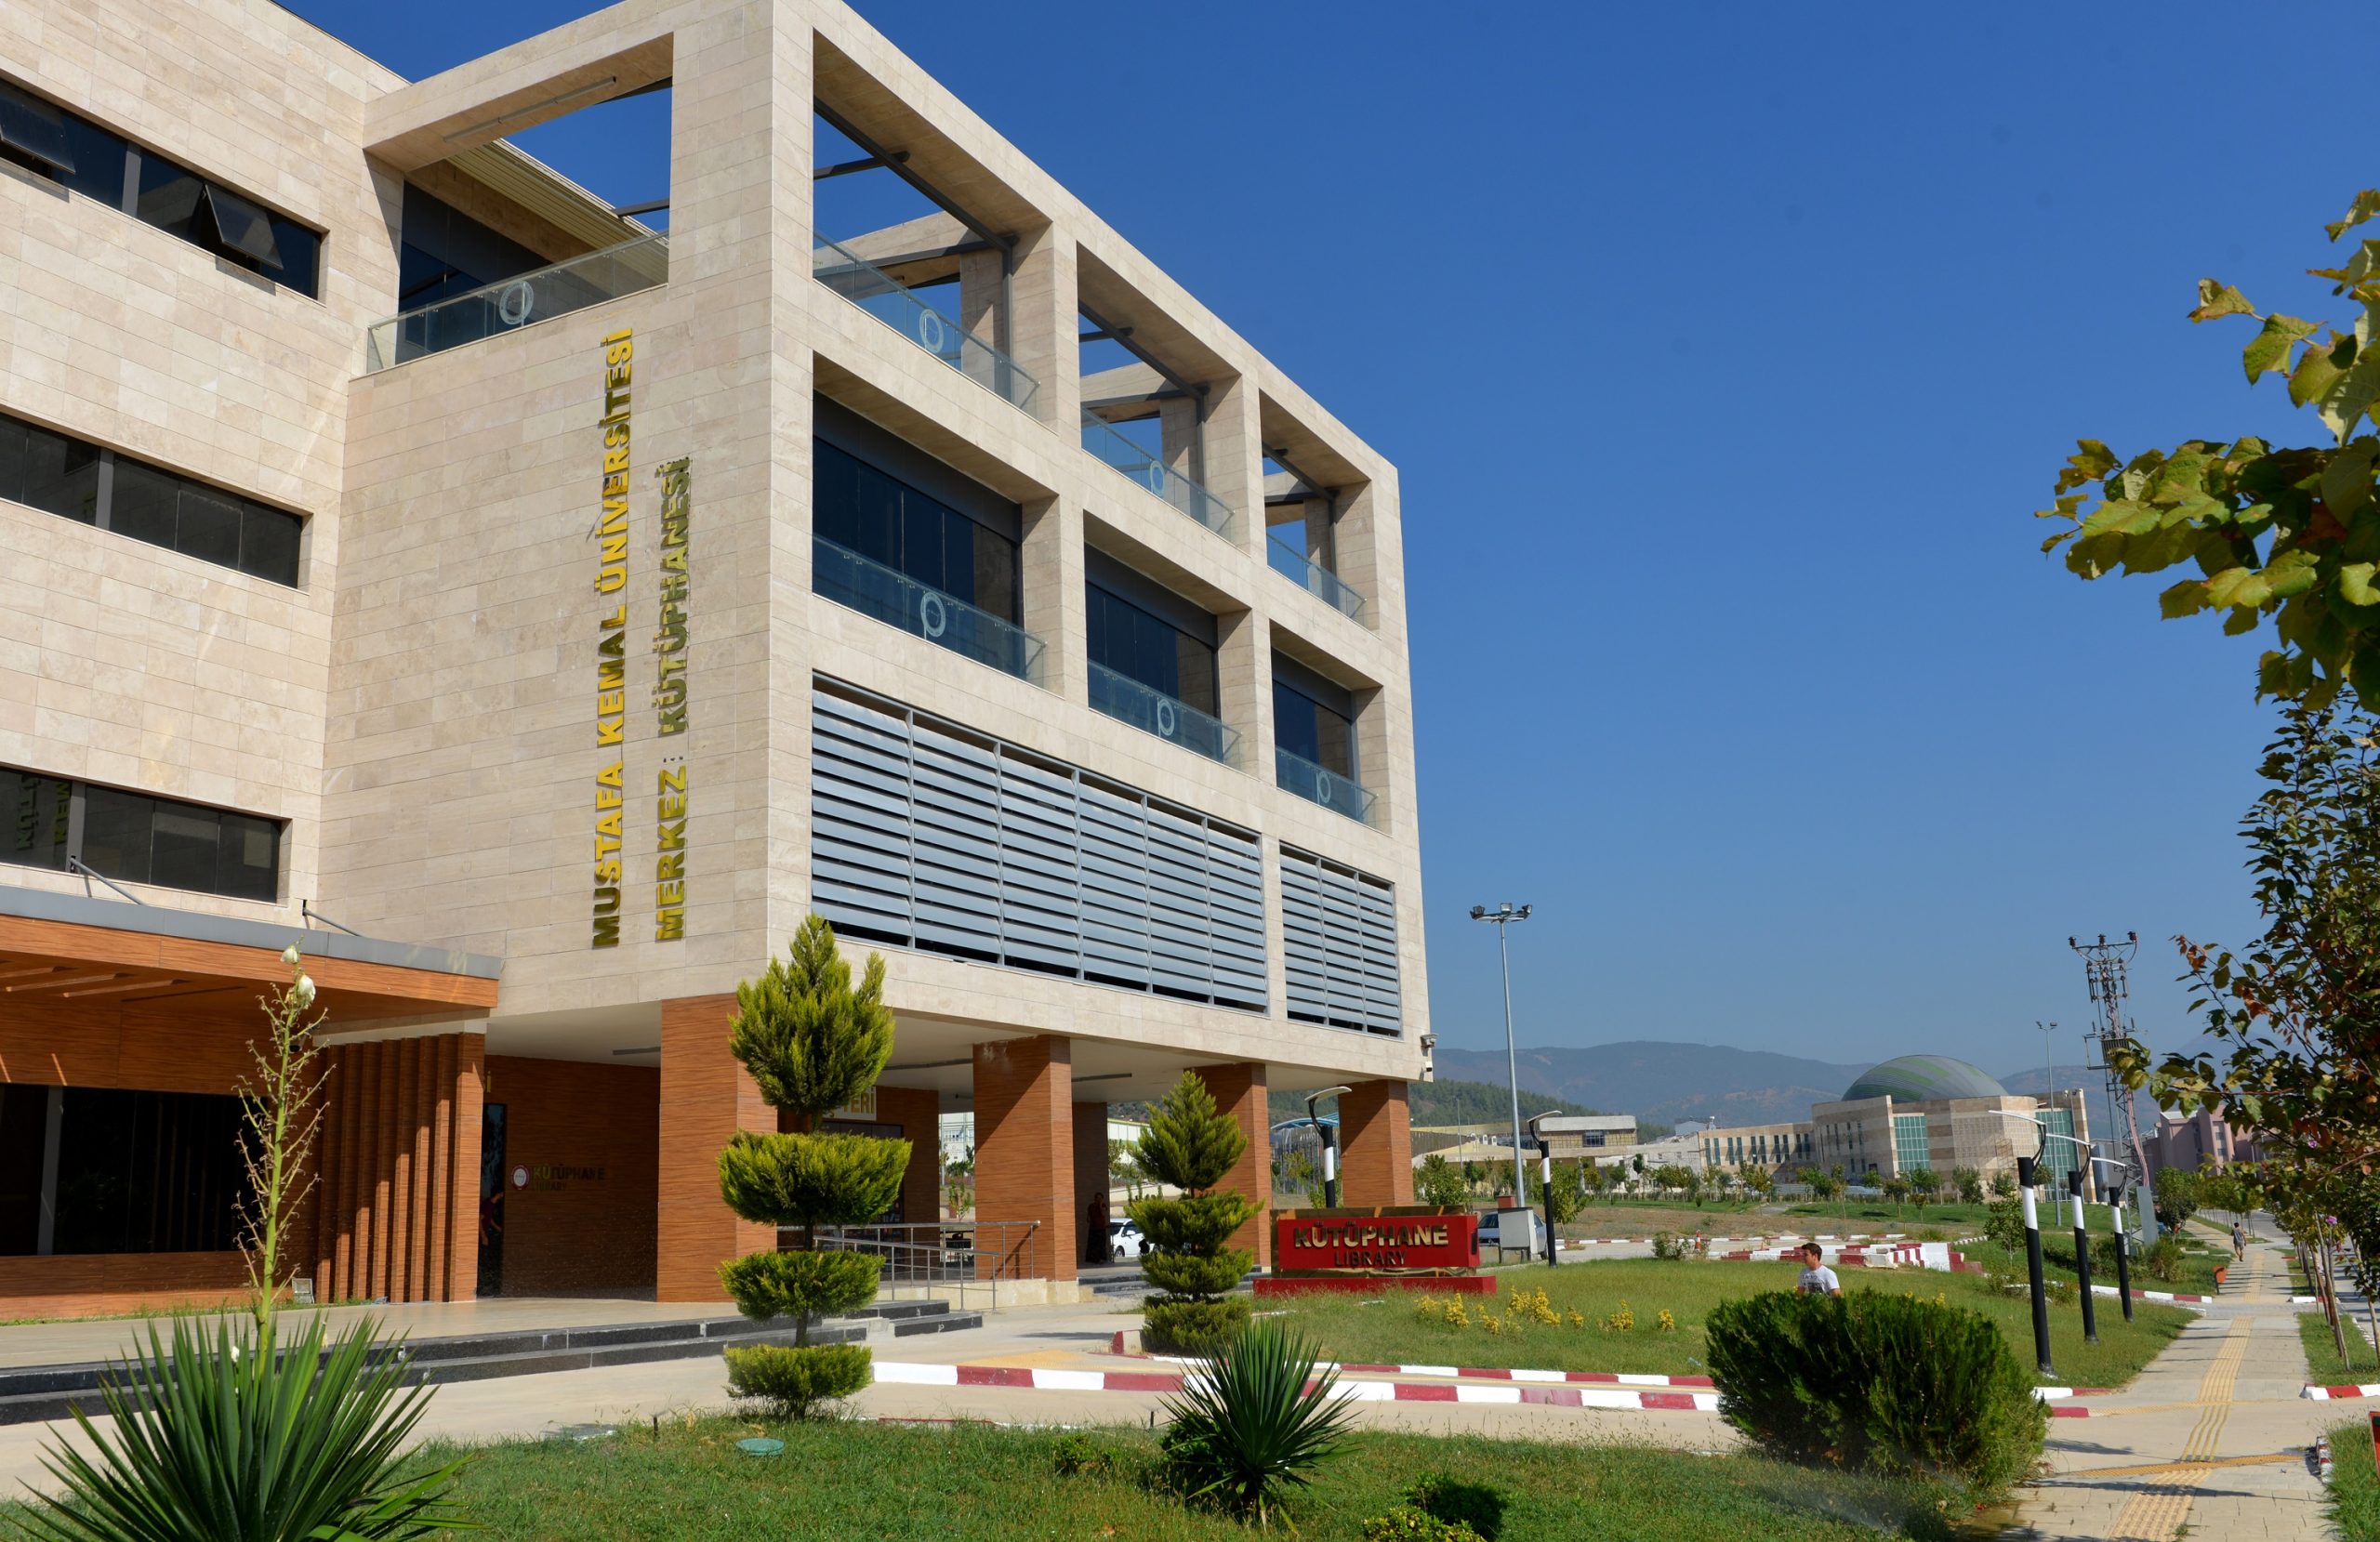 Jurusan Dan Biaya Kuliah Hatay Mustafa Kemal University